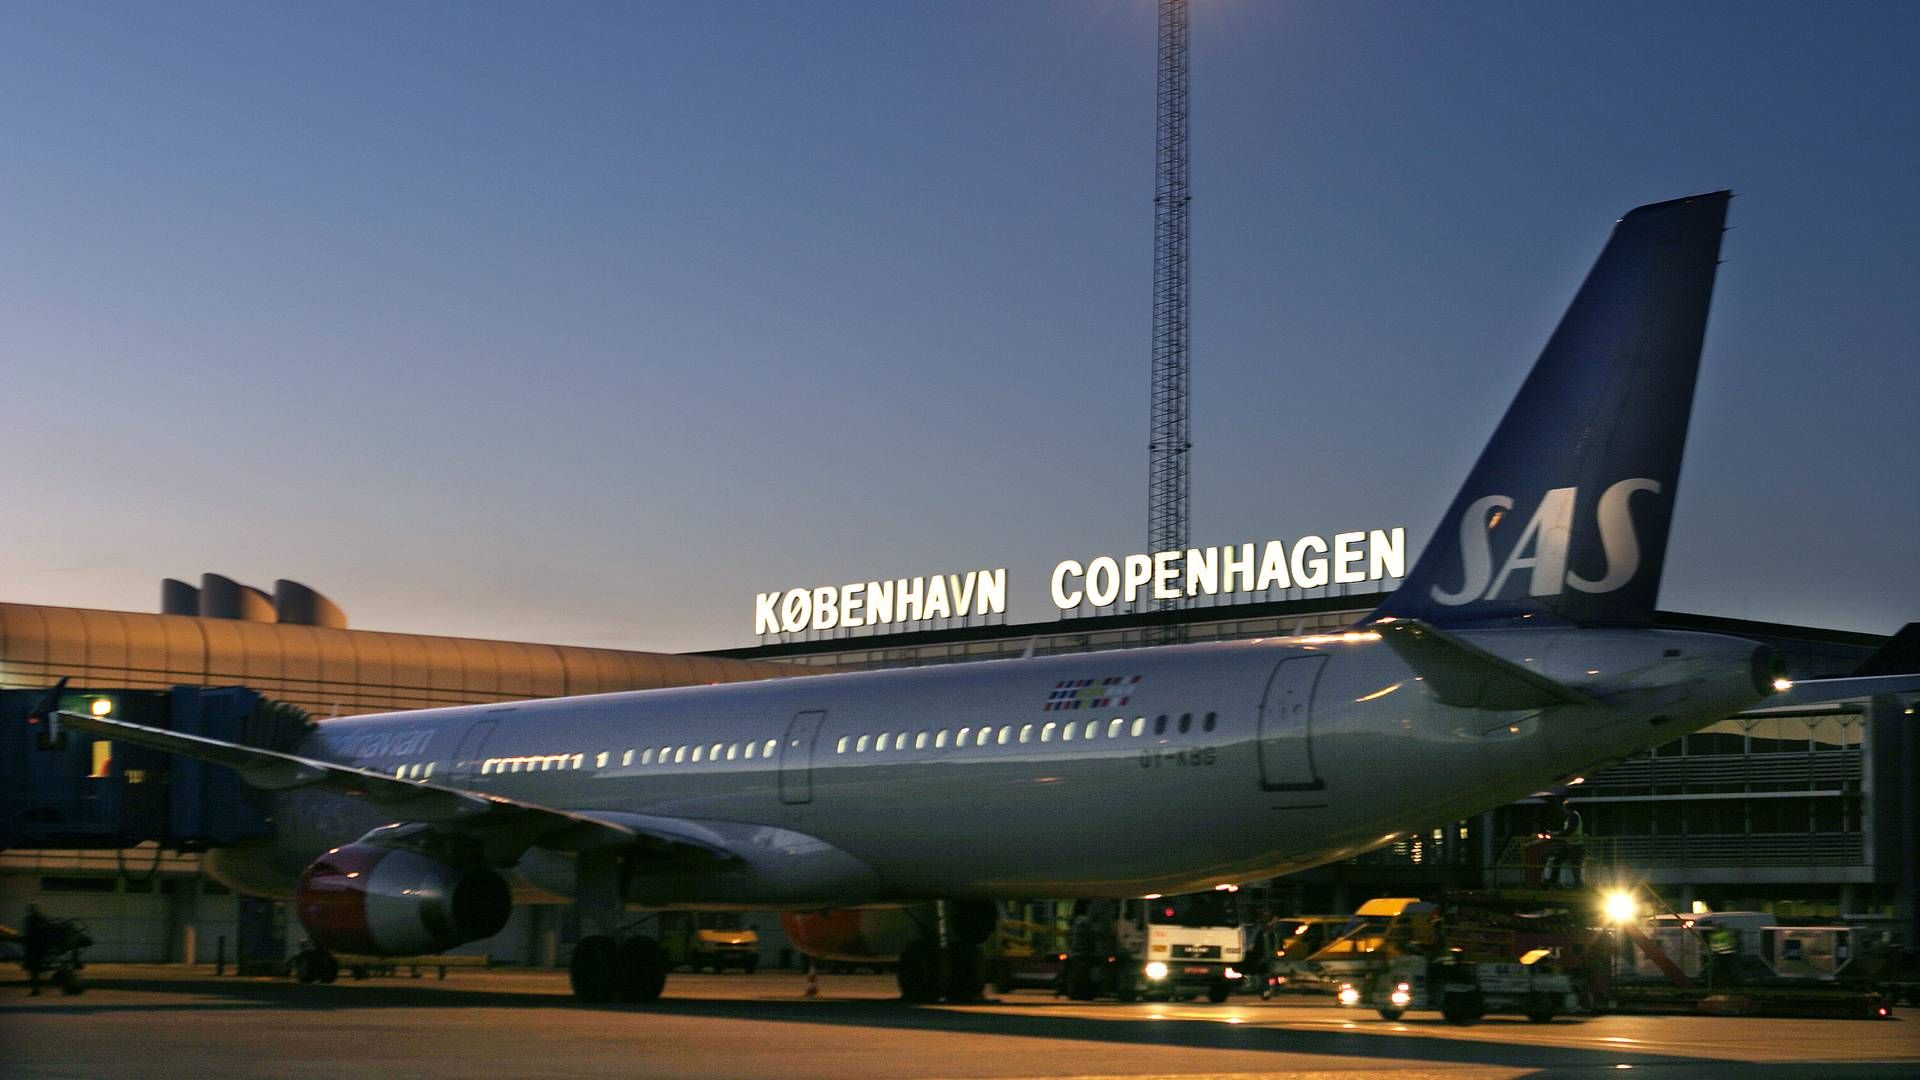 Københavns Lufthavn kan stå overfor en kaotisk sommer, forudser aktieanalysechef og luftfartsanalytiker i Sydbank, Jacob Pedersen. | Foto: Pr / Københavns Lufthavn